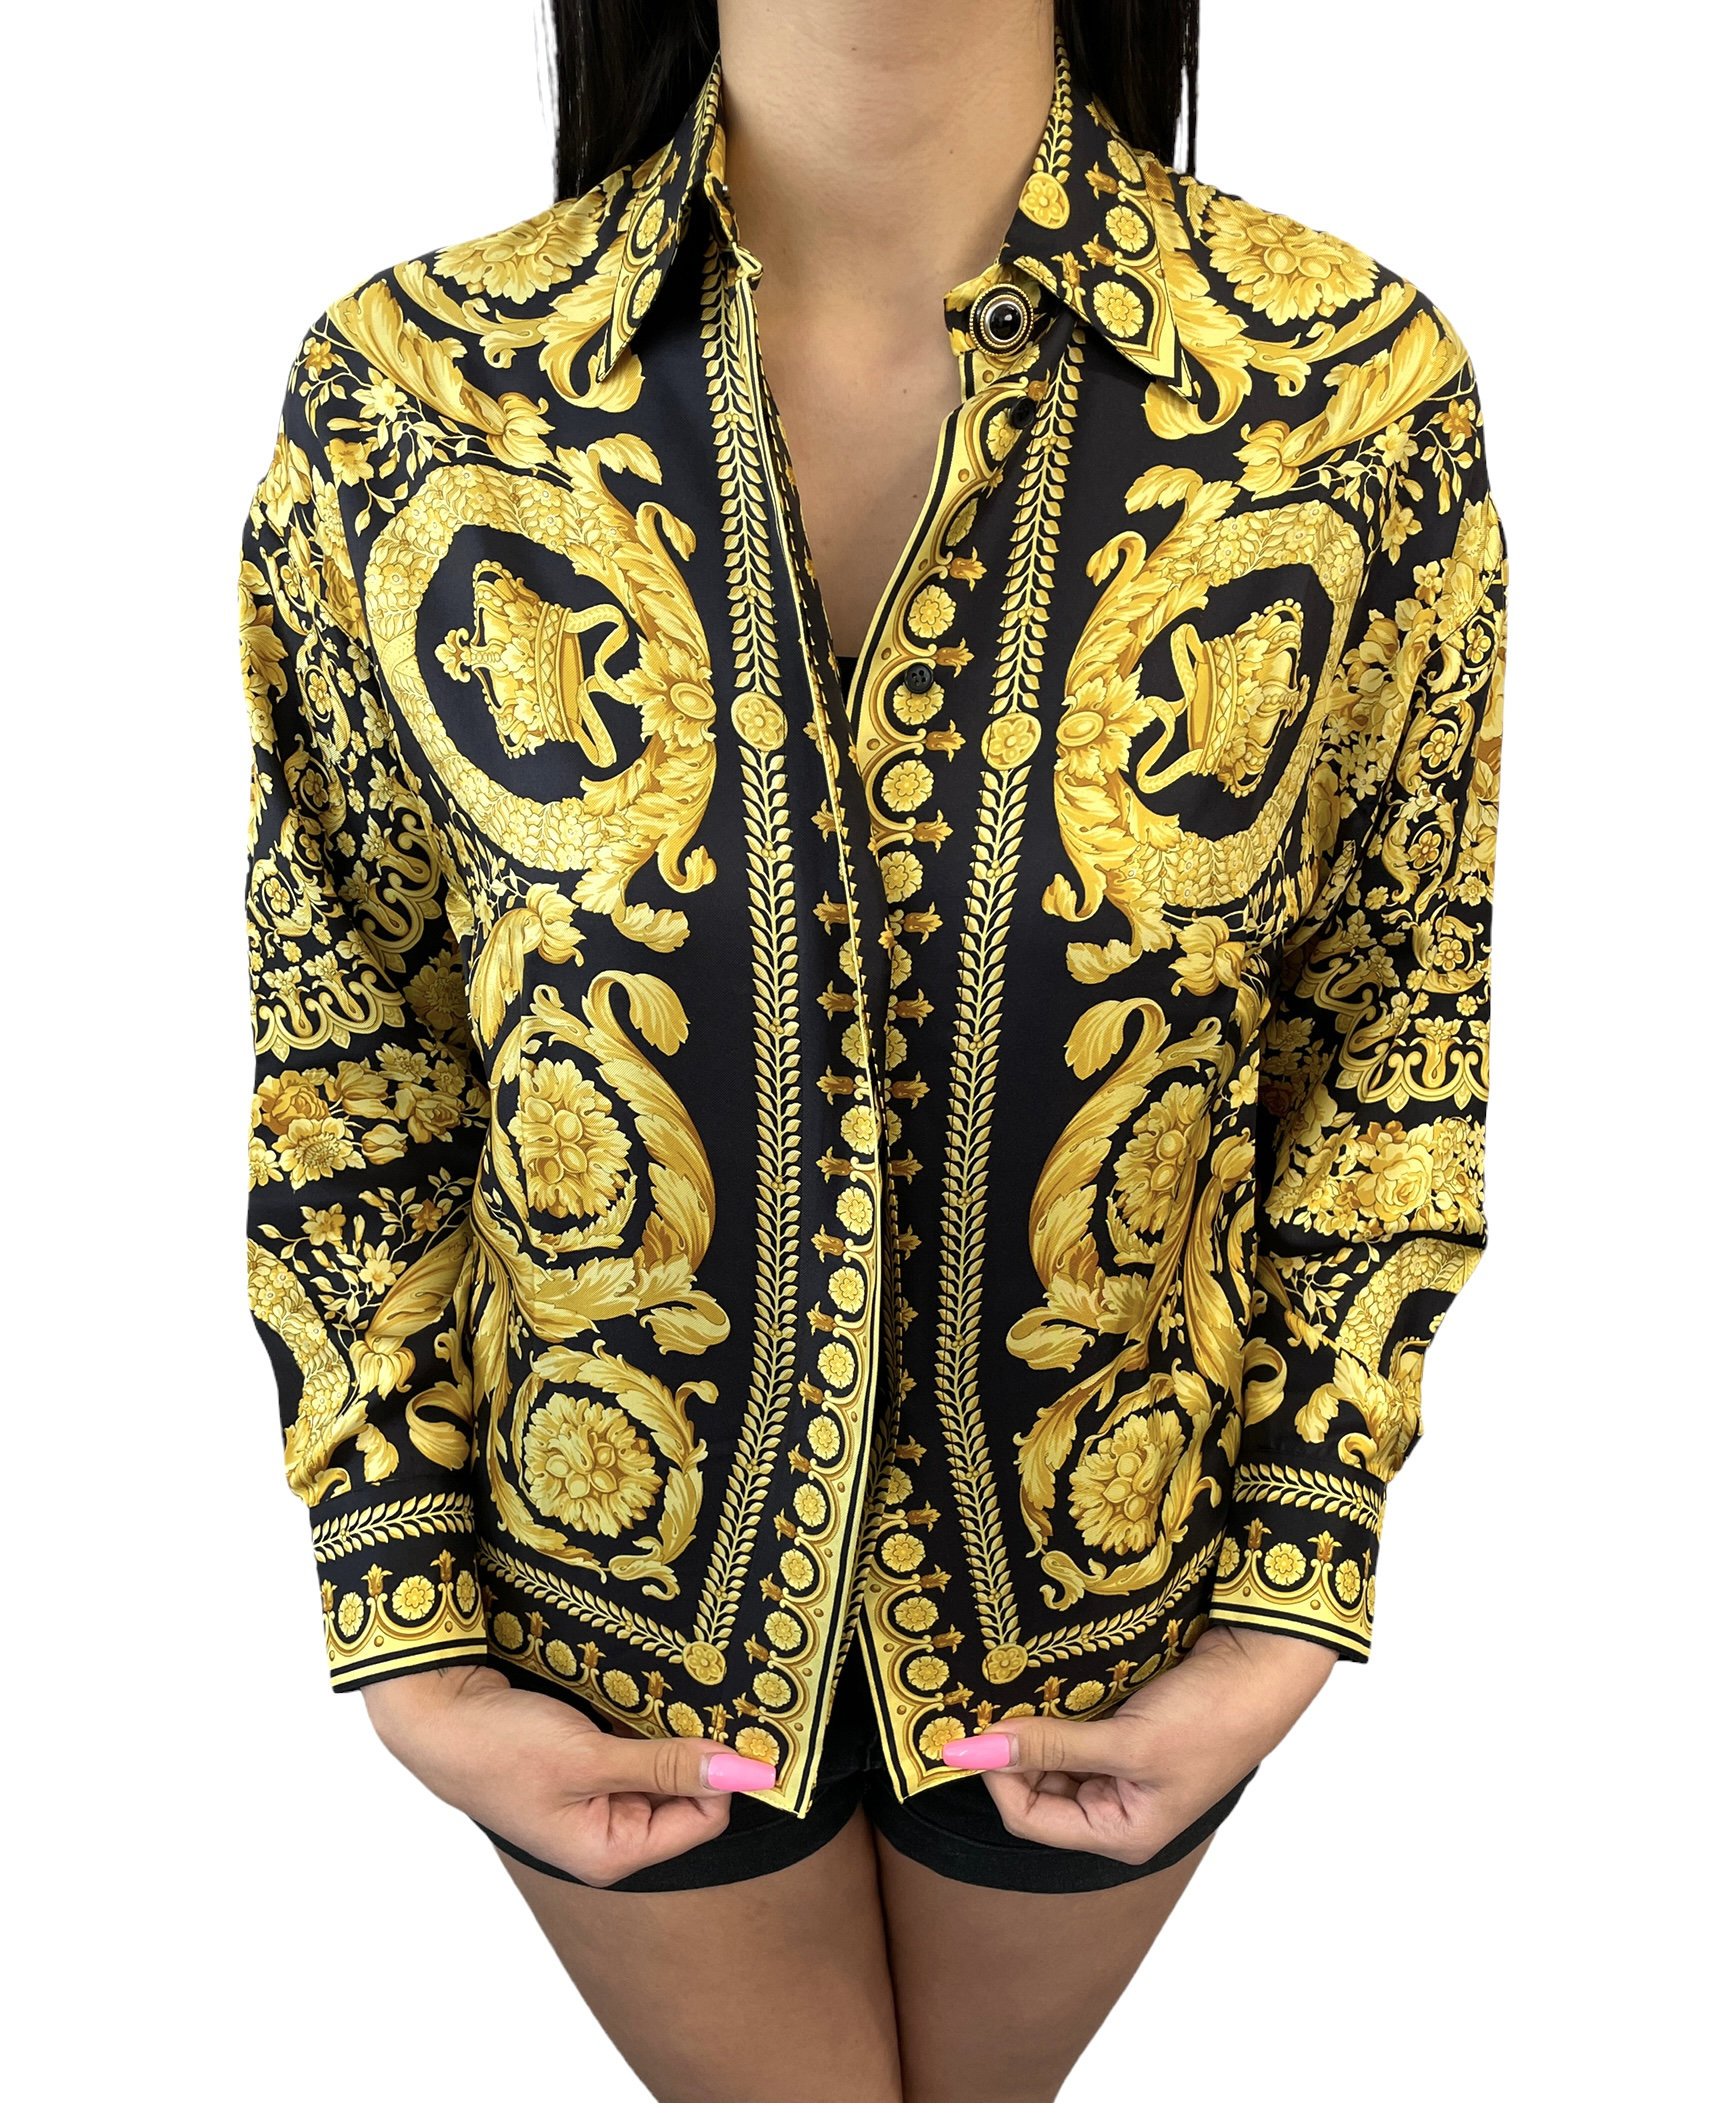 Gianni Versace Vintage Seide Hemden #38 Top Bluse Gold Schwarz Knopf Rankab+ von LuxuryFashionSparkJP